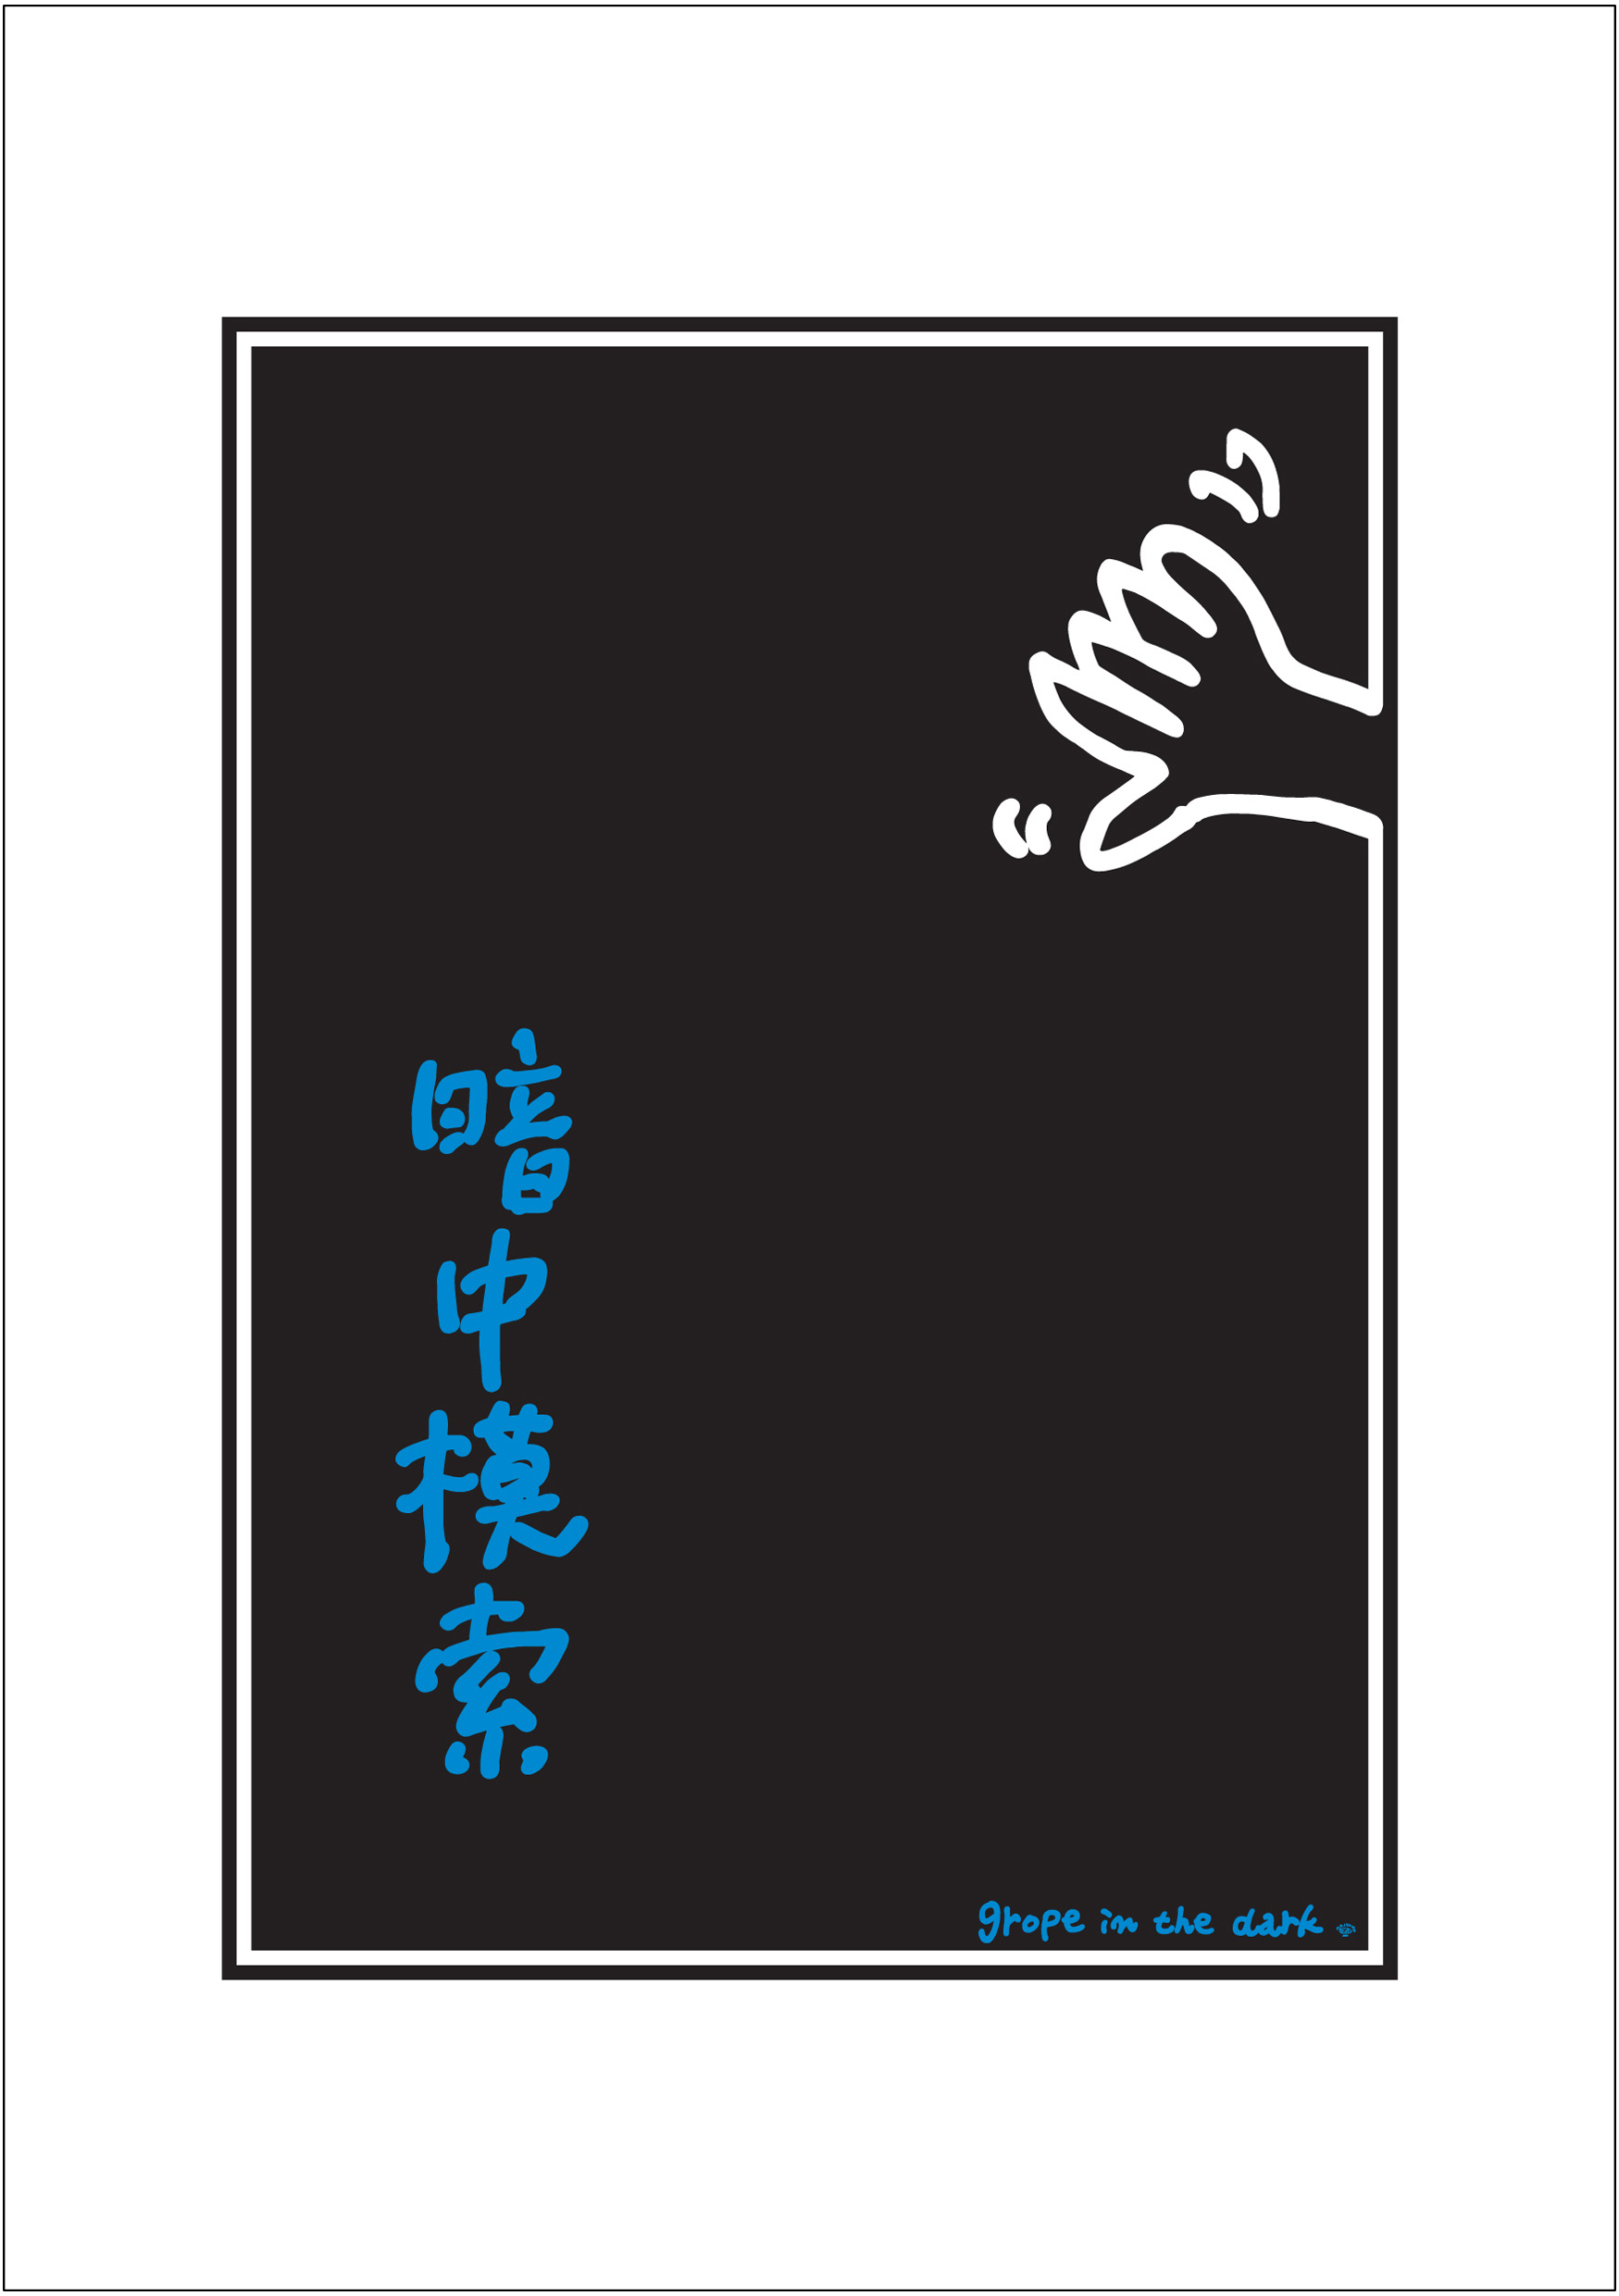 ポスターアーティスト秋山孝が2005年に制作したアートカード「アートカード ポスター 2005 09」